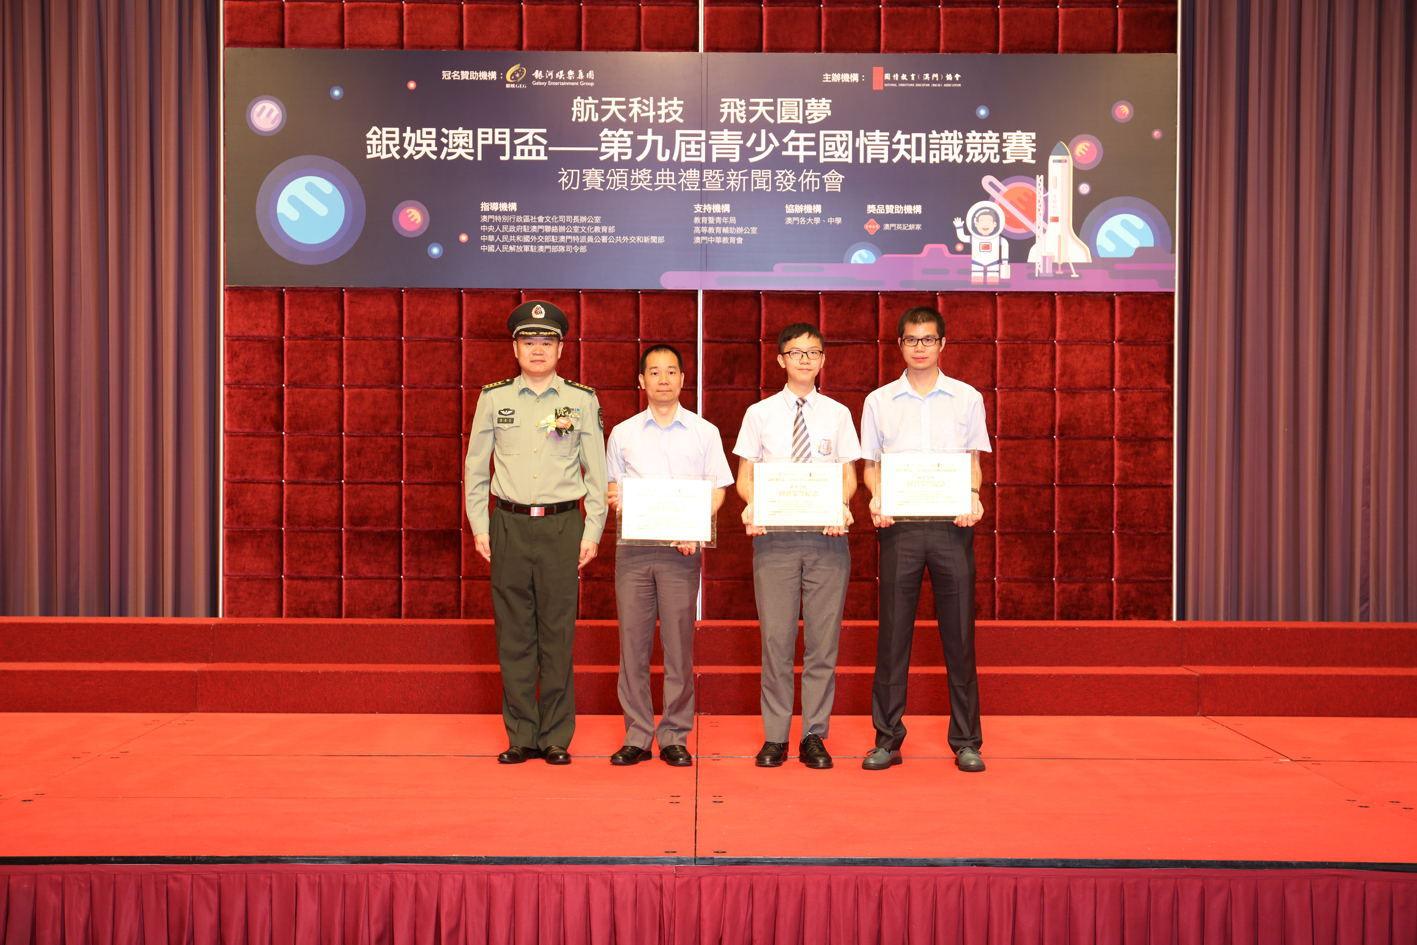 中國人民解放軍駐澳門部隊代表高志軍大校為新華學校、鏡平學校、培華中學代表頒獎.JPG